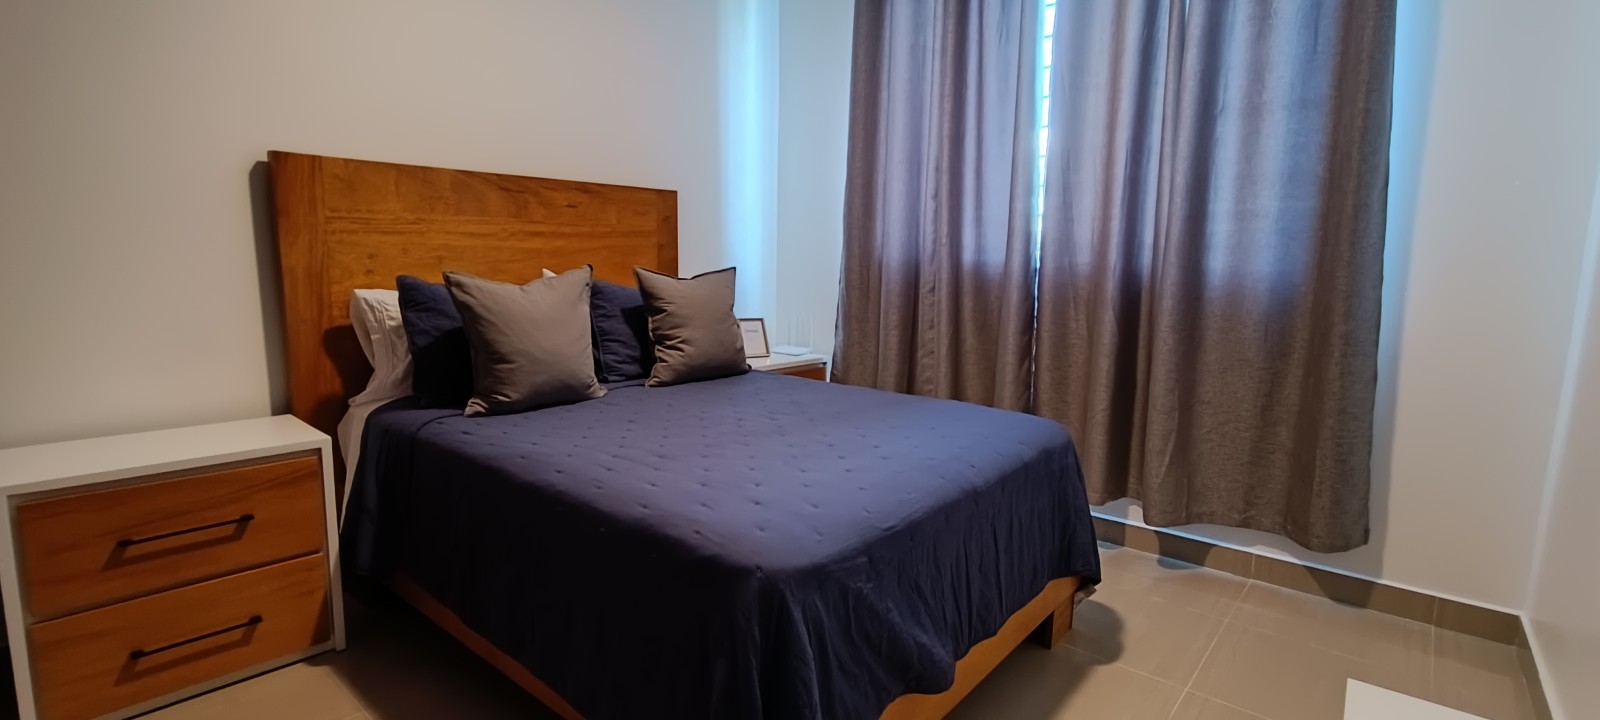 apartamentos - Vendo 4to piso Amueblado para inversión airbnb en el despertar